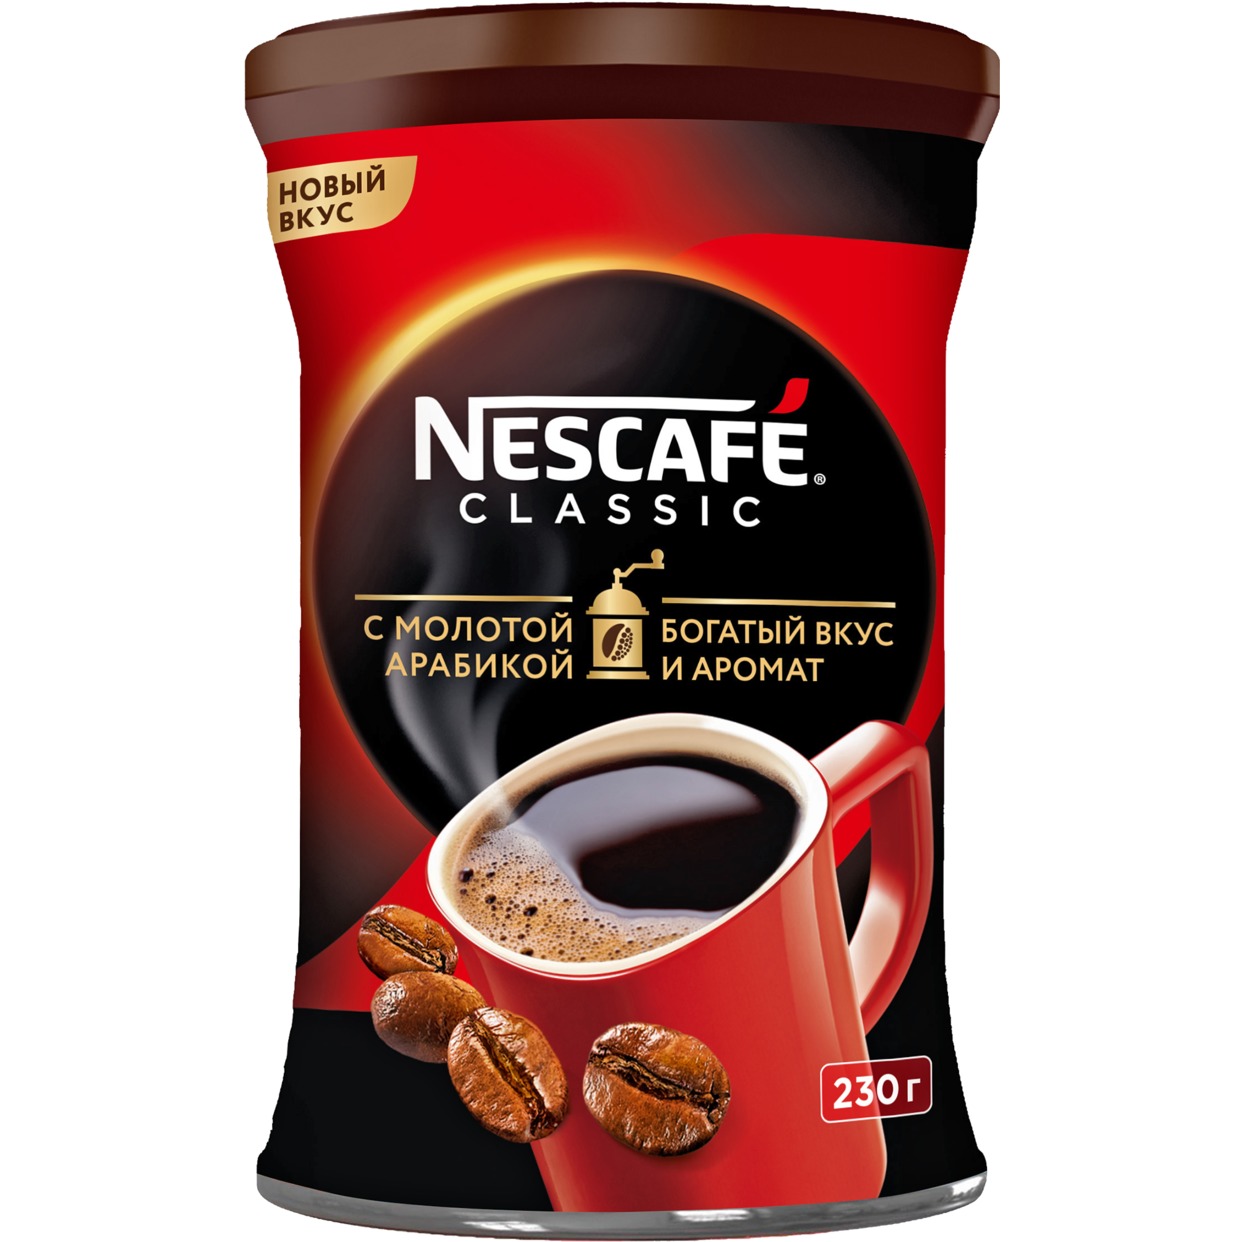 Кофе Nescafe Classic, растворимый, 230 г по акции в Пятерочке